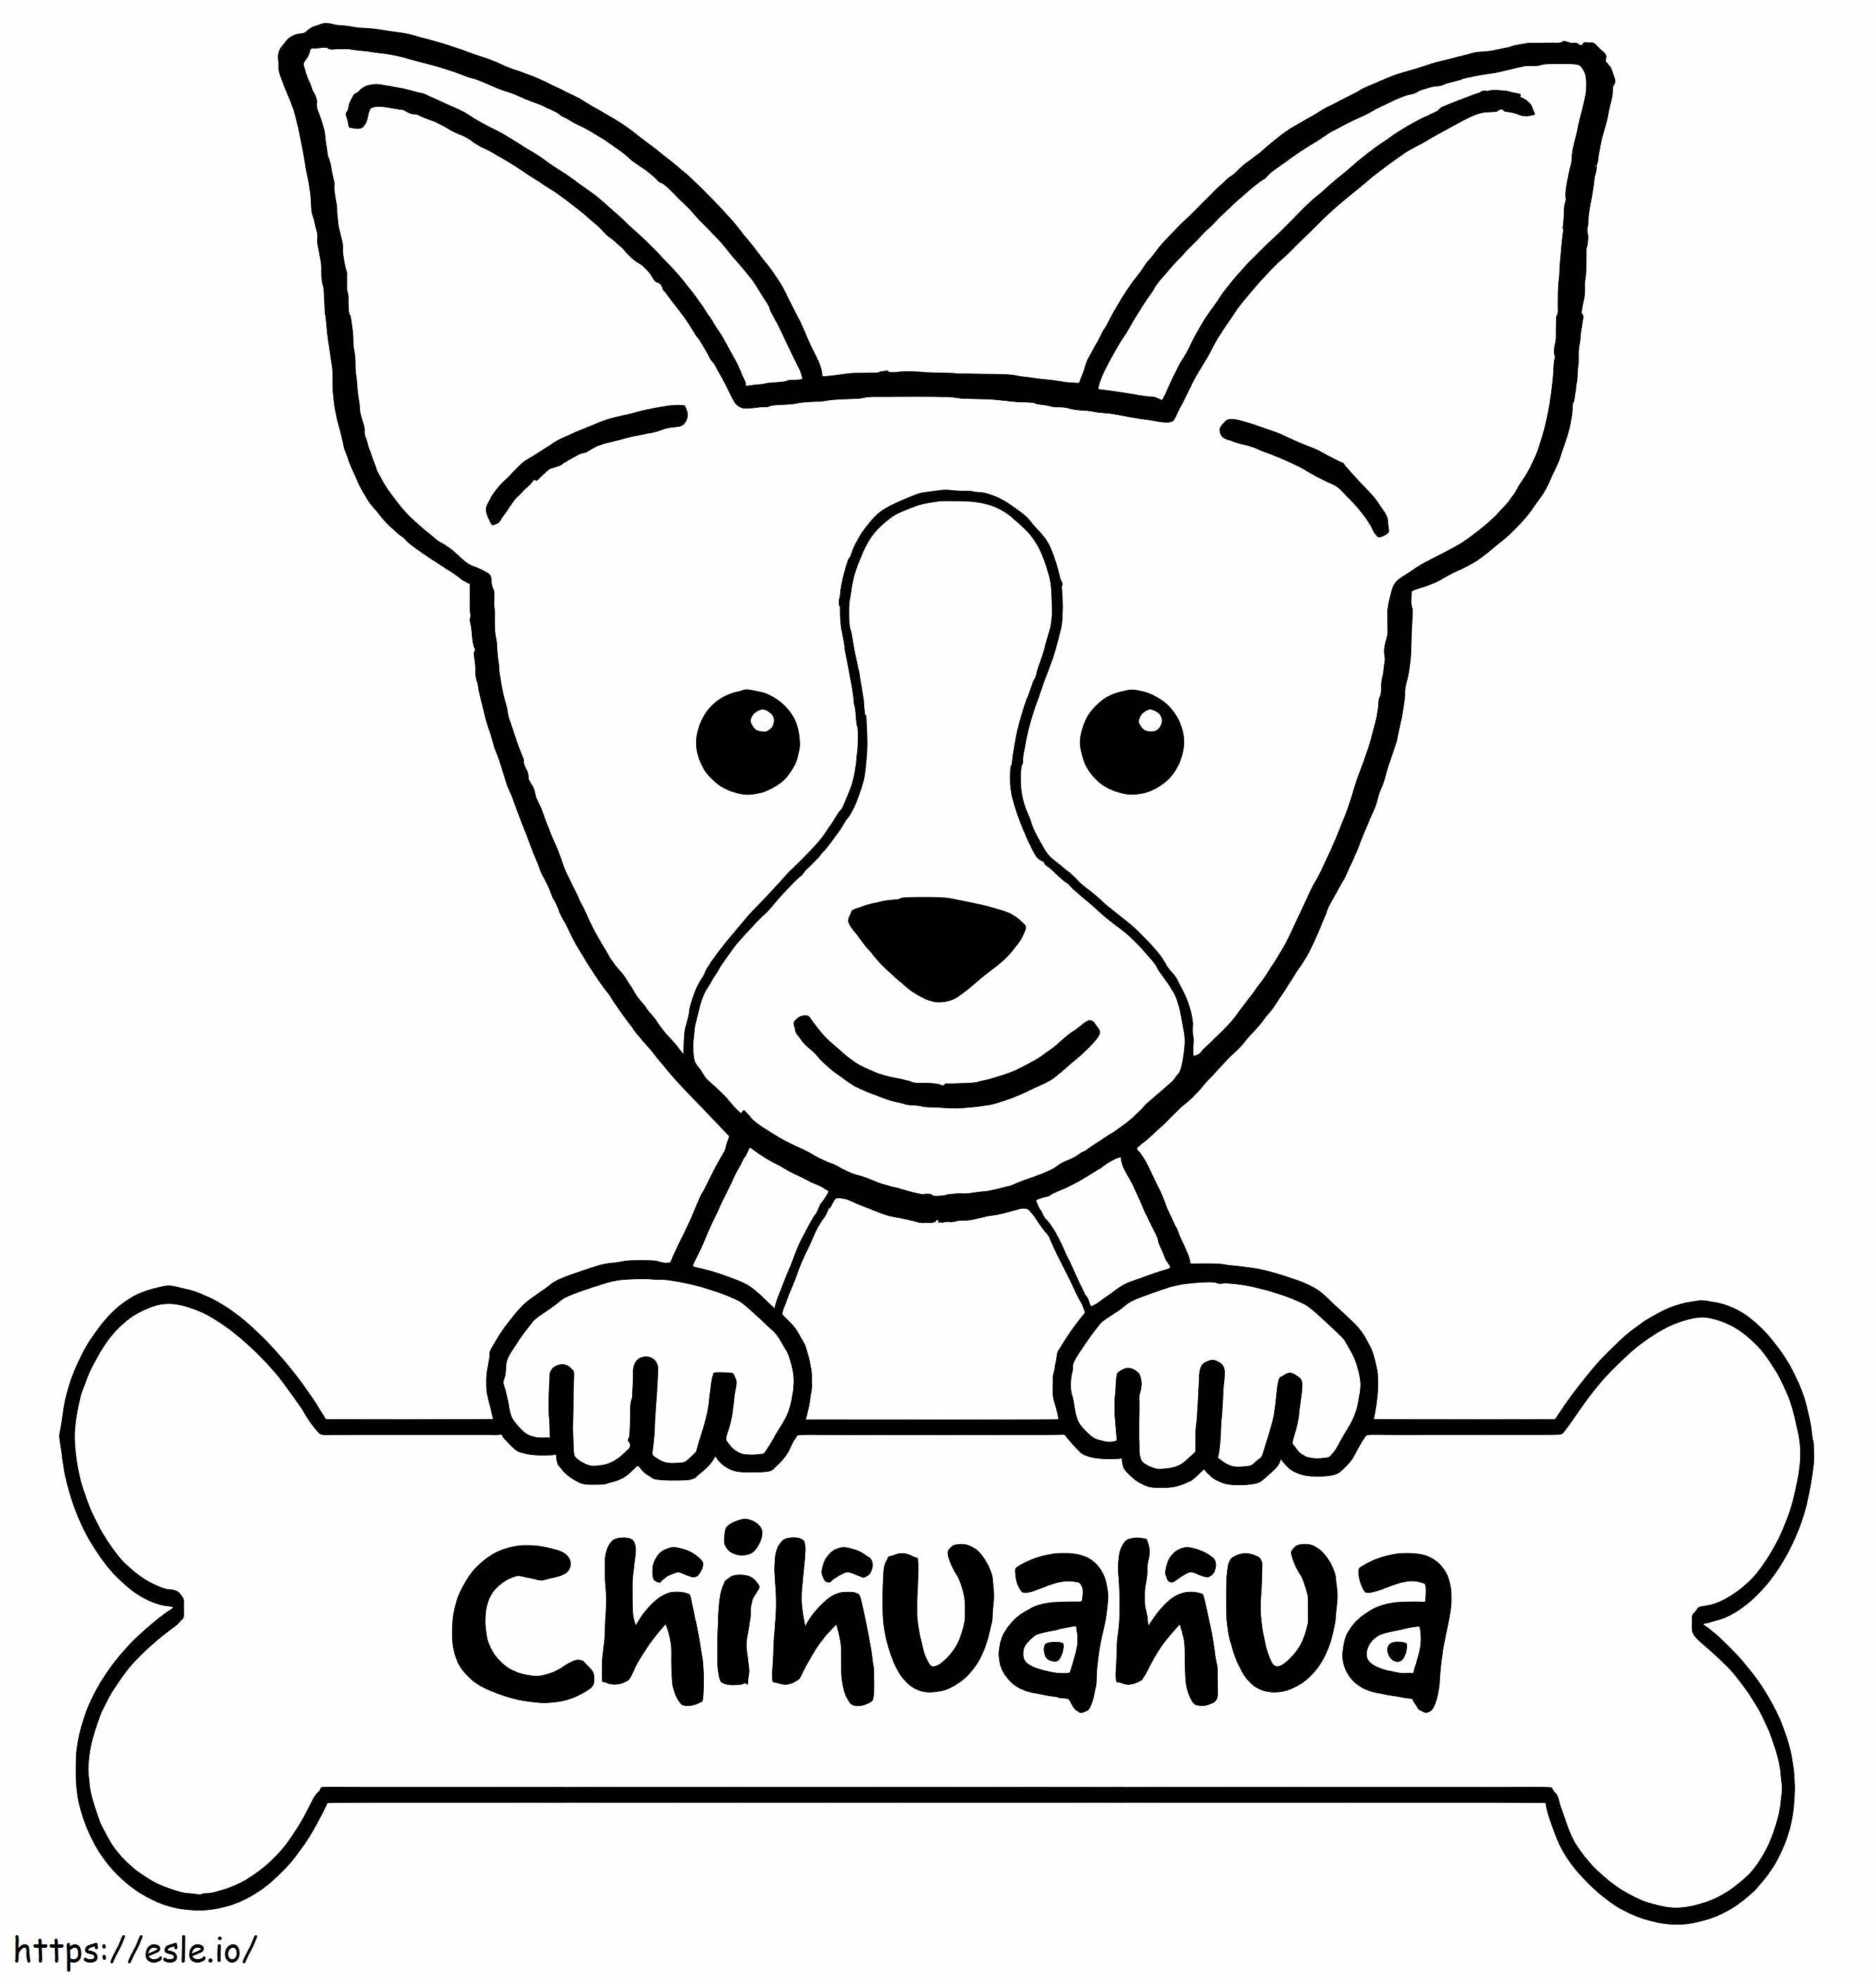 Chihuahua und Knochen ausmalbilder